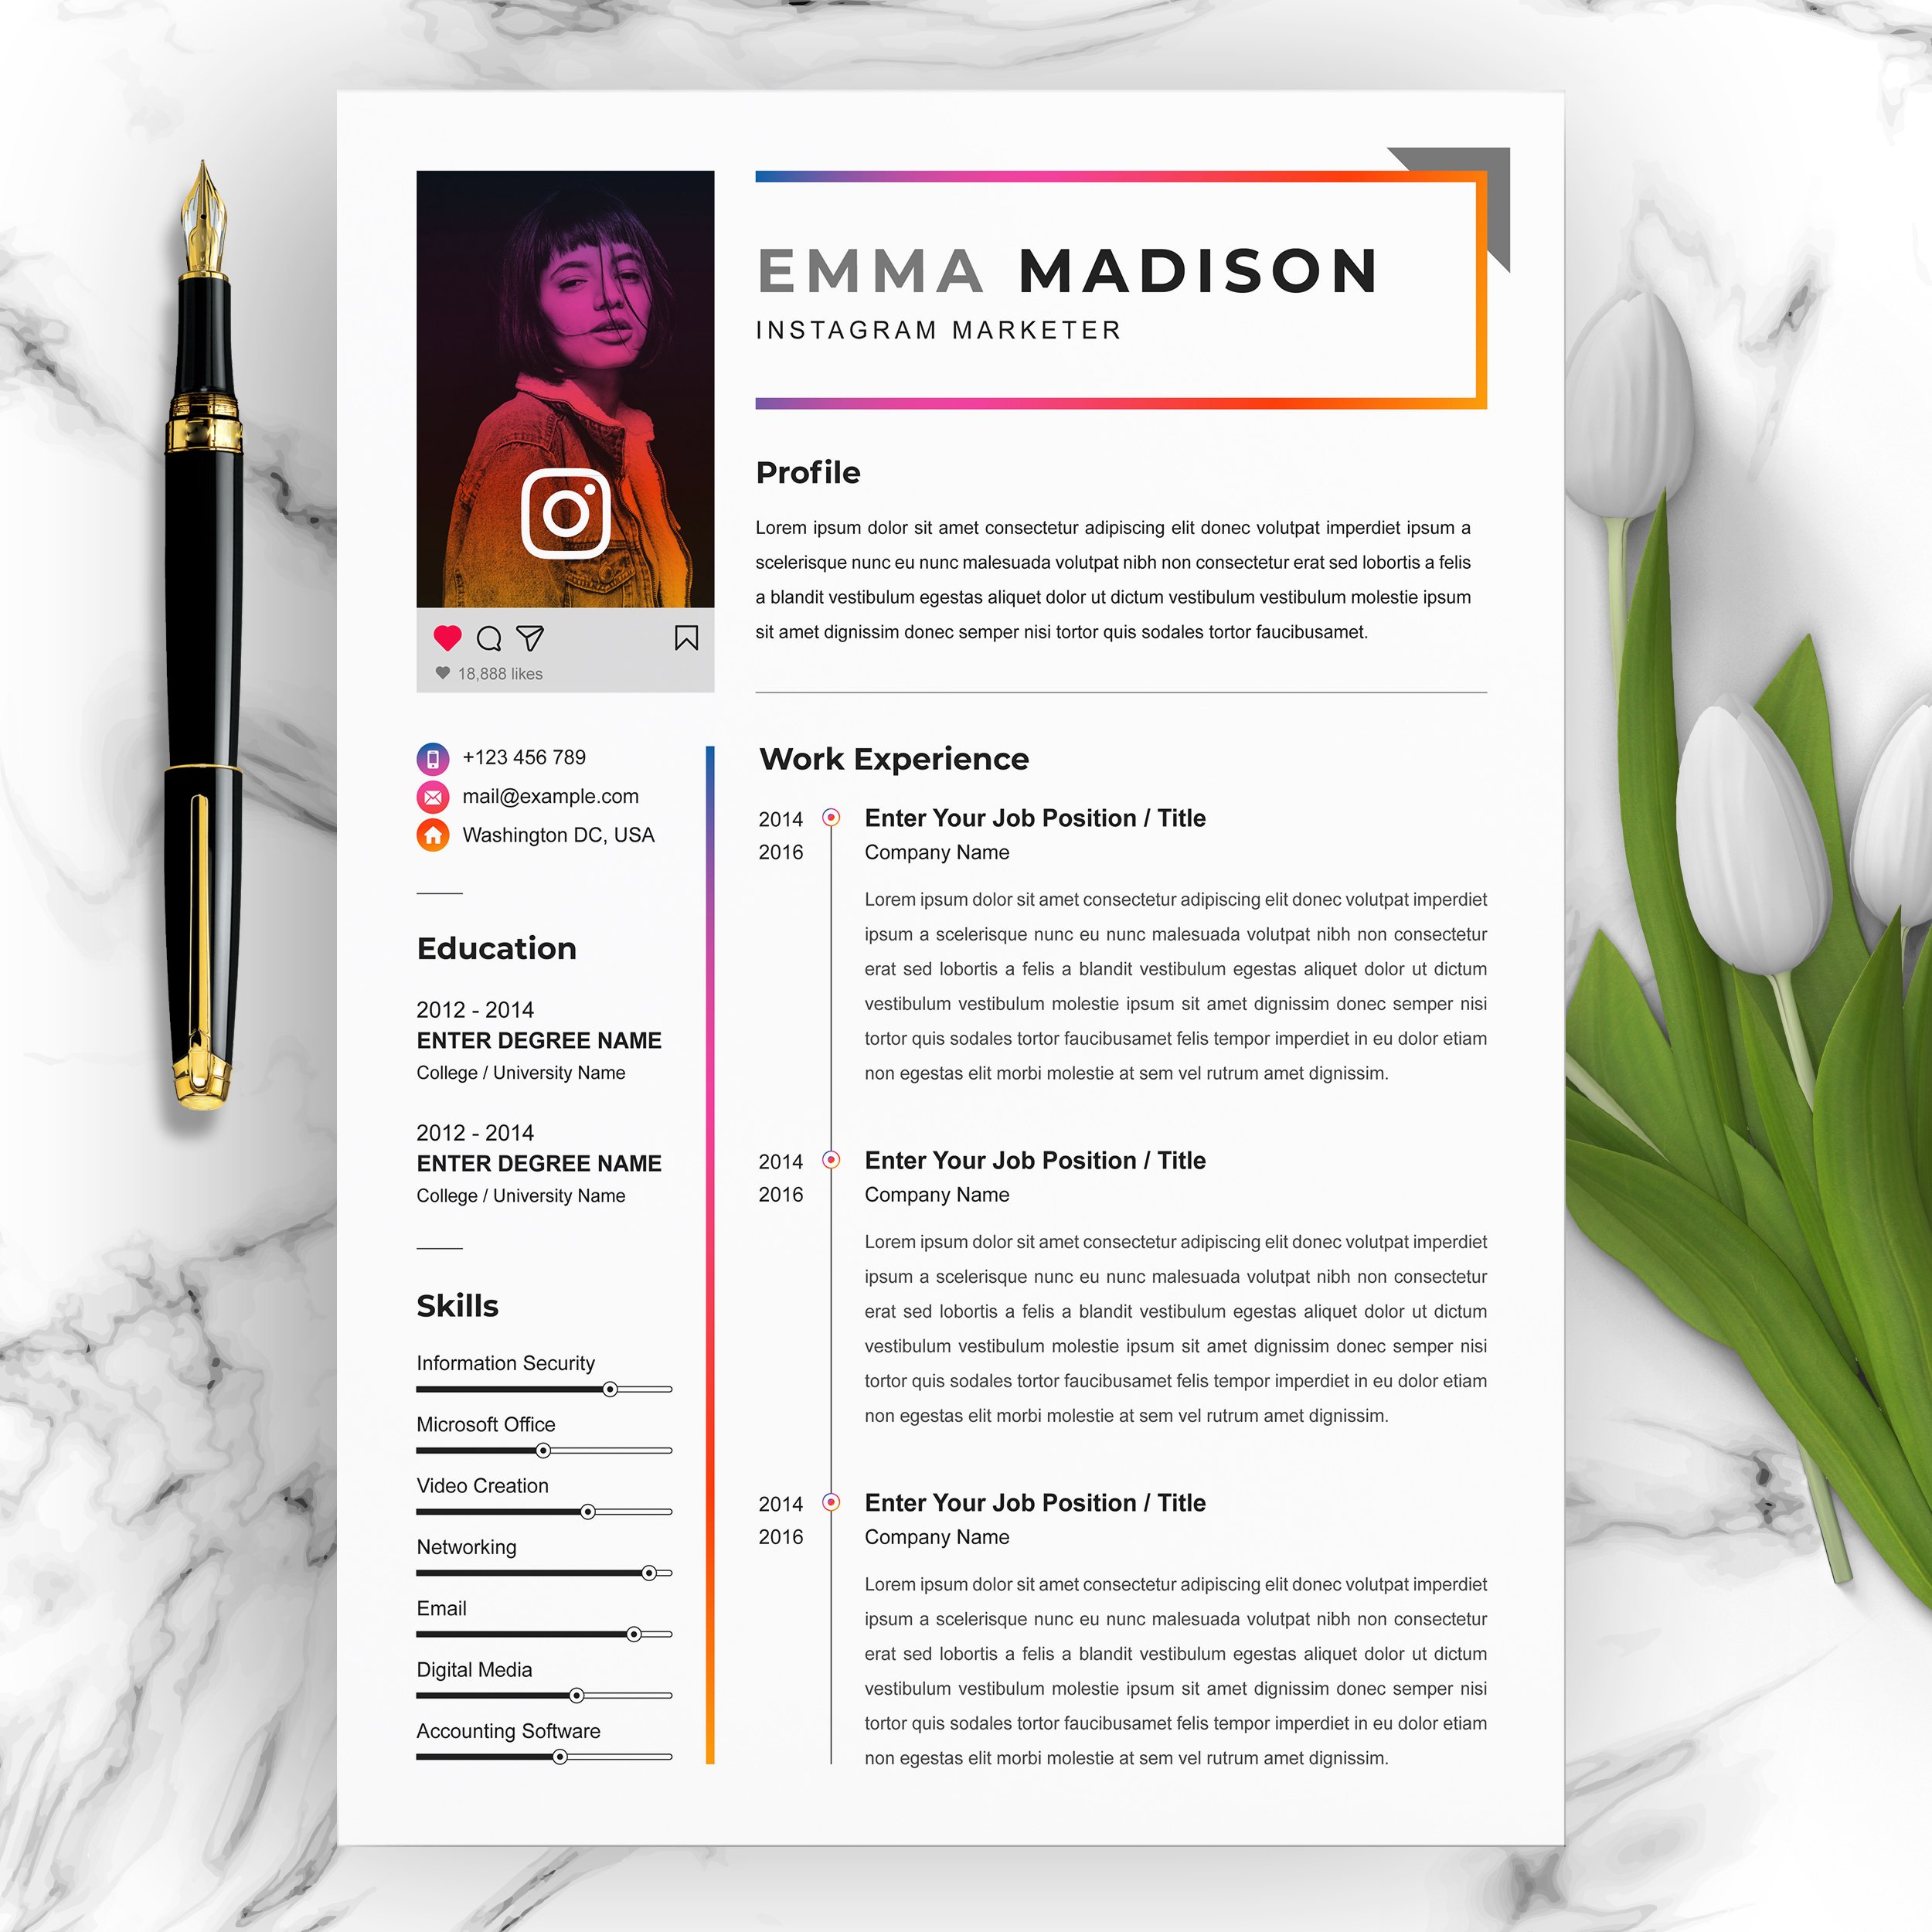 CV / Resume for Instagram Marketer cover image.